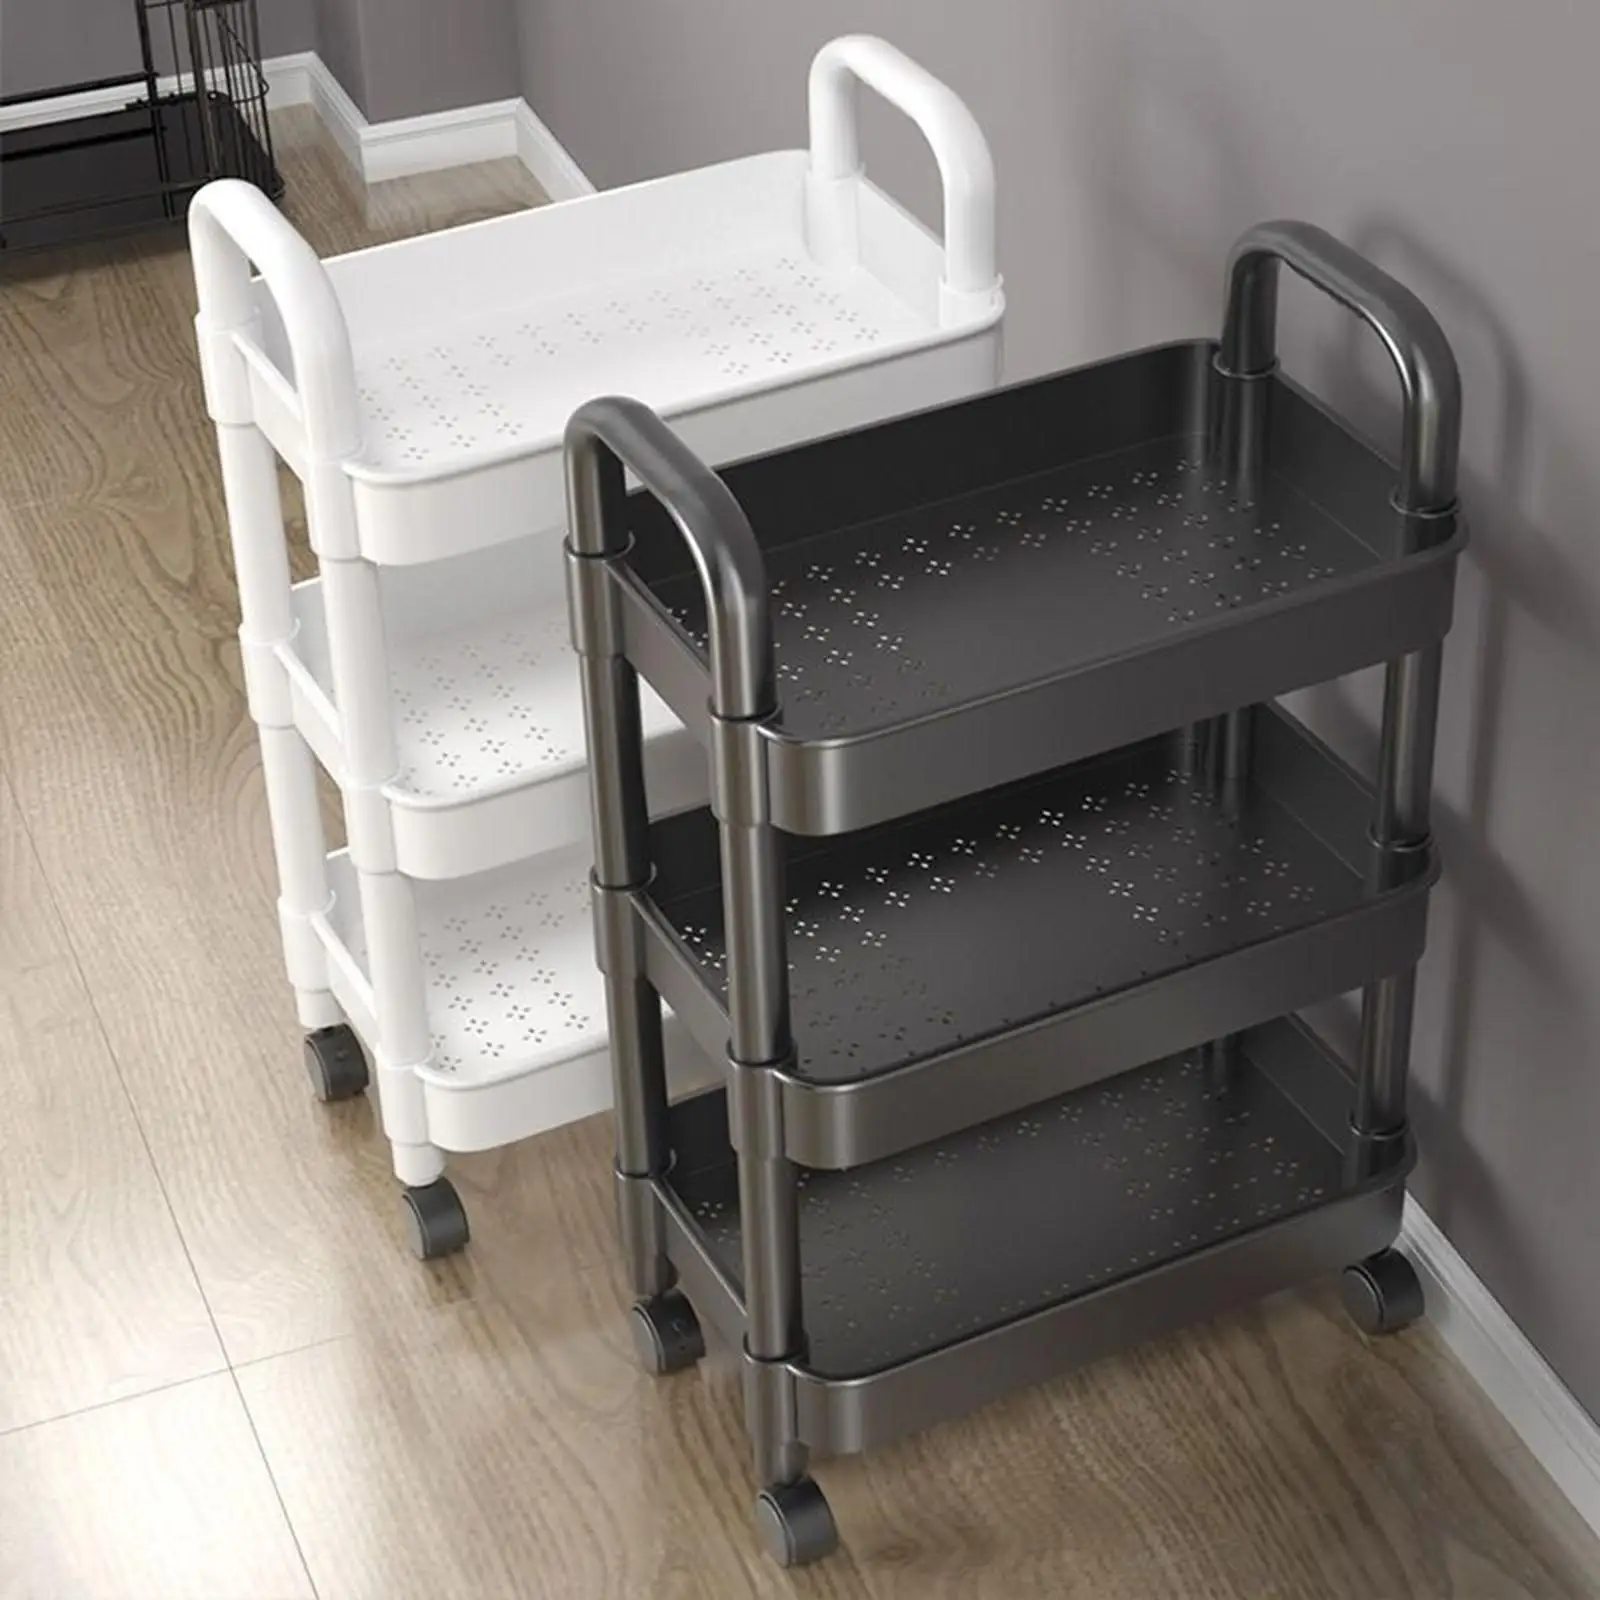 Mobile Utility Cart Utensils Rack Organization Cart for Living Room Office